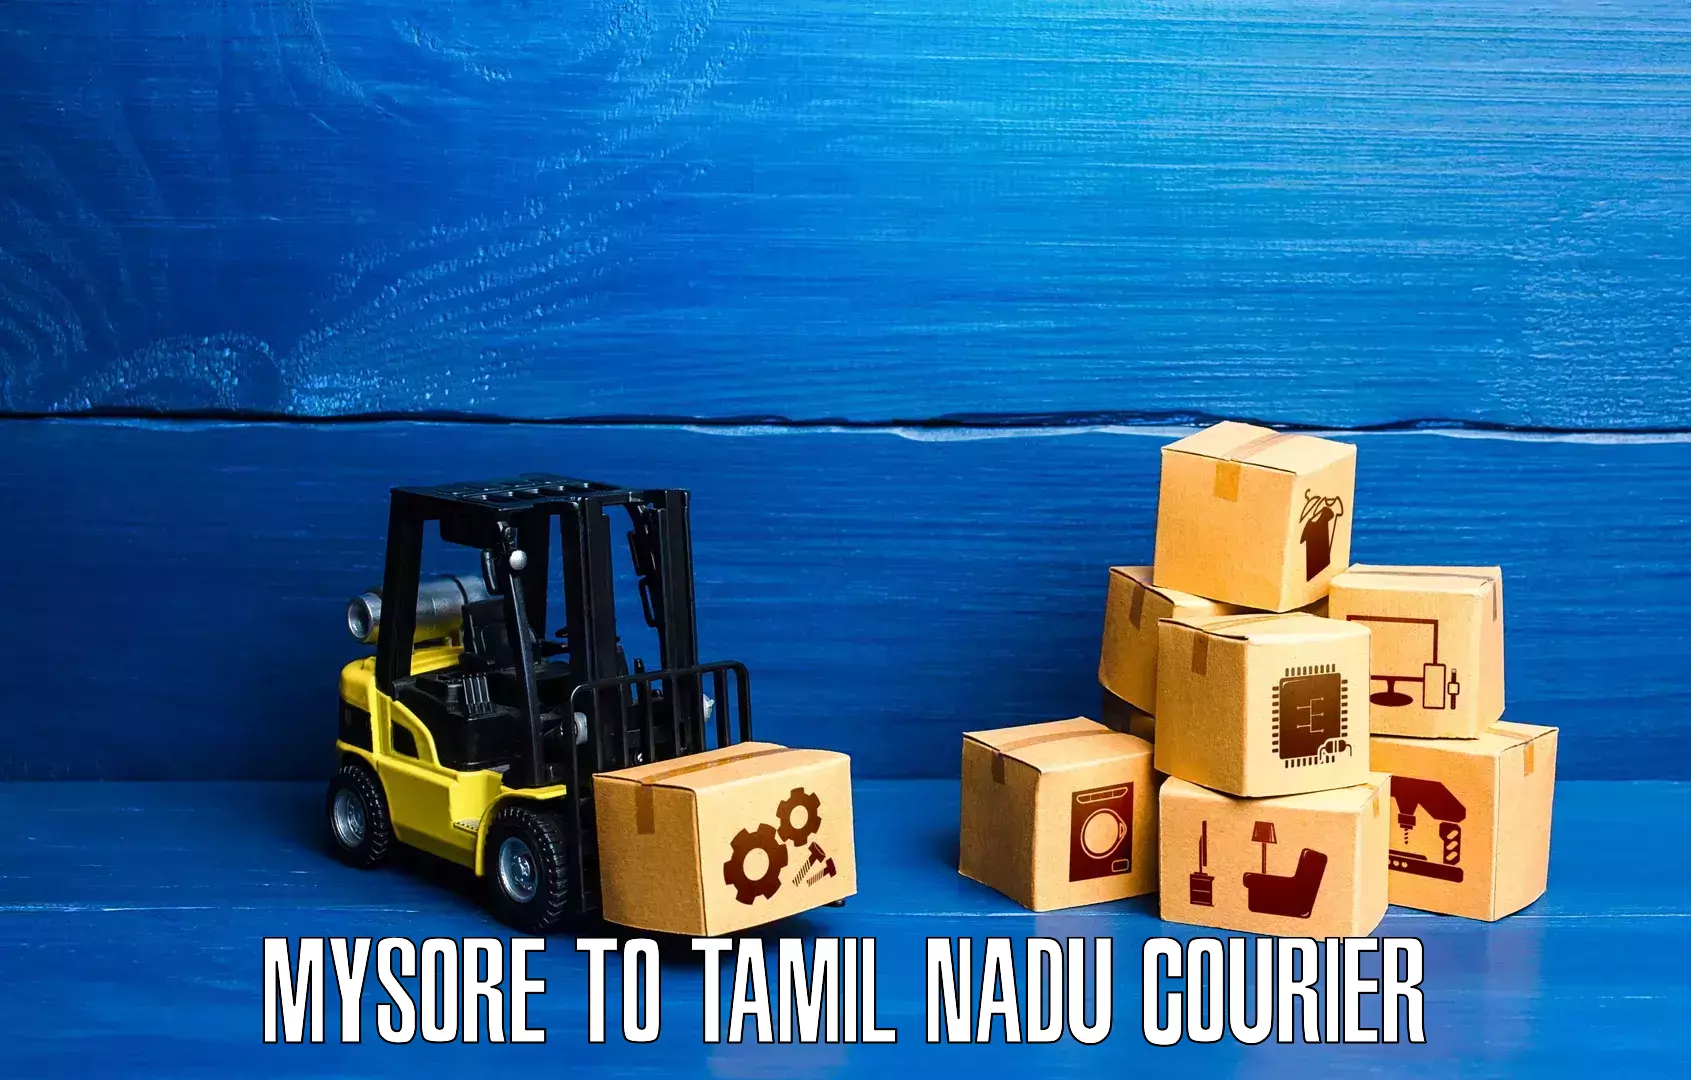 Fast delivery service Mysore to Valparai